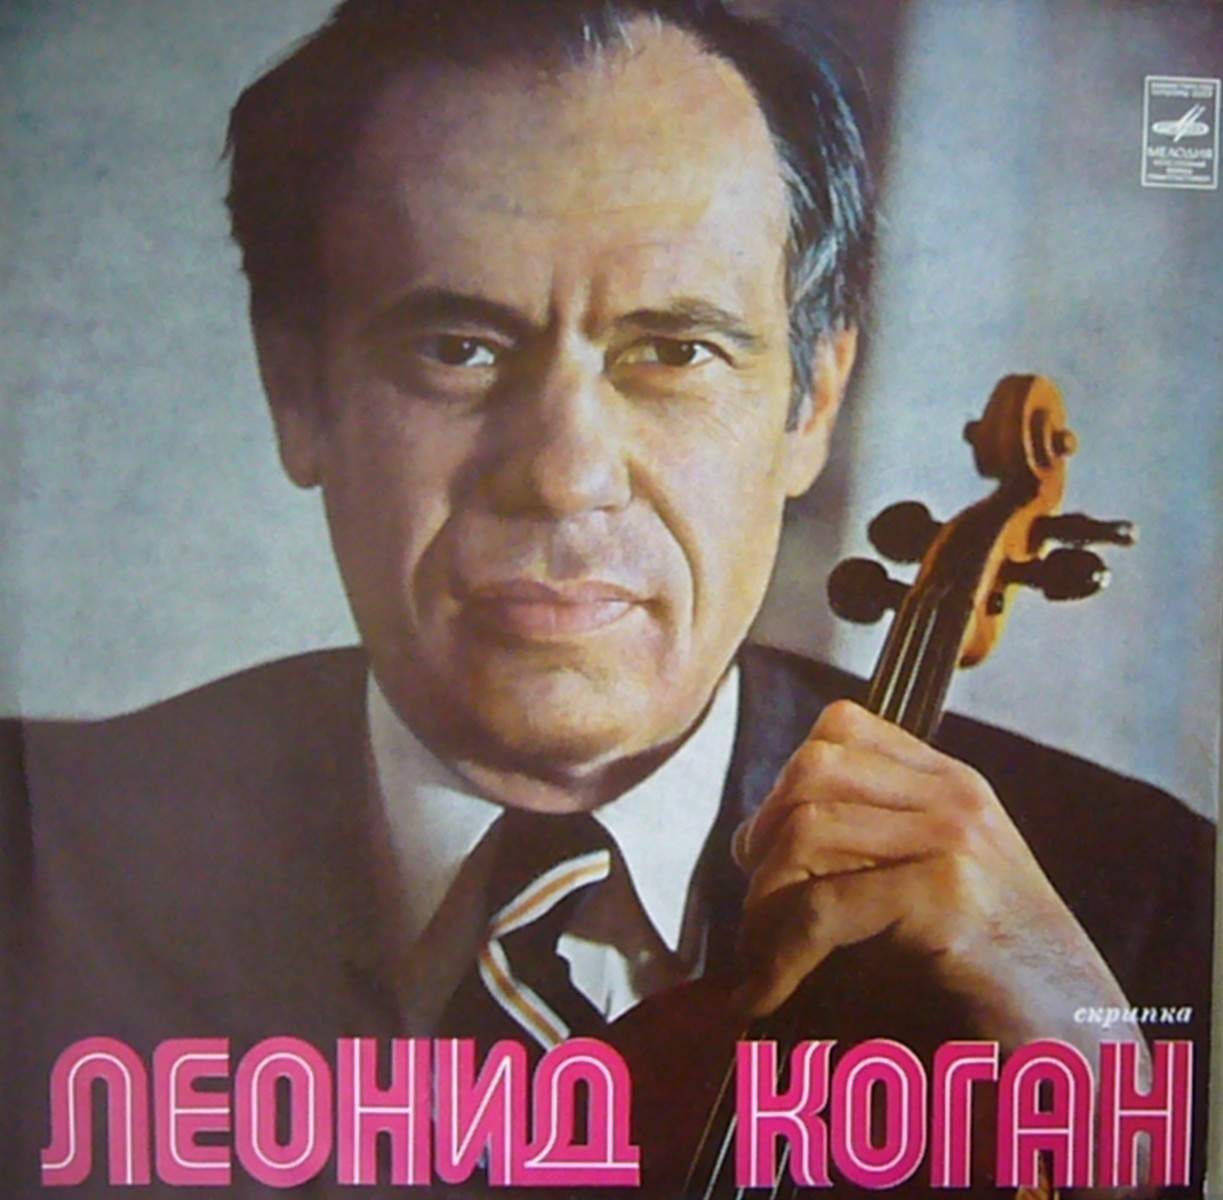 Играет Леонид Коган (скрипка)